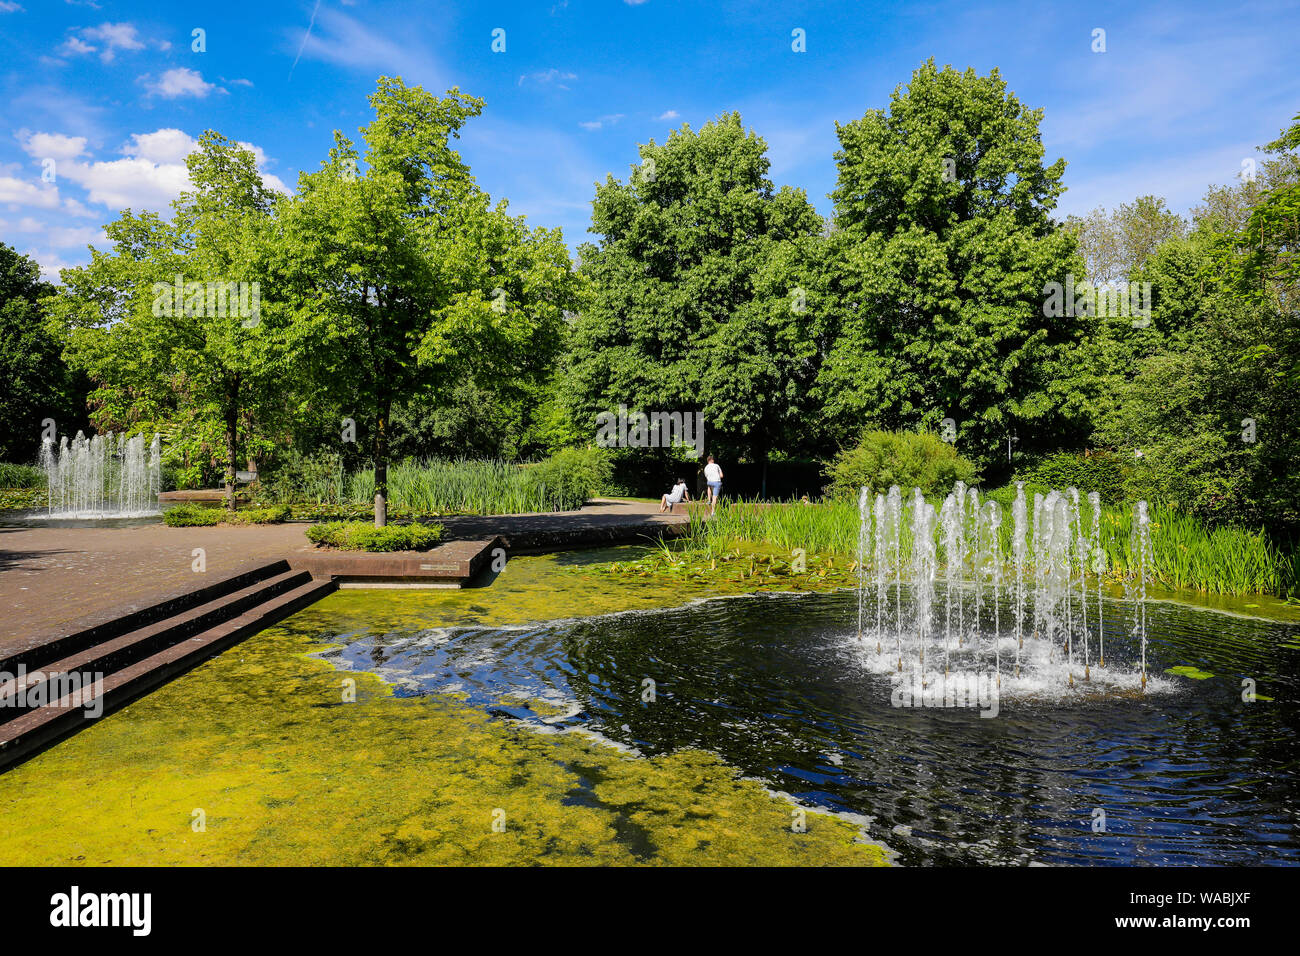 Mülheim an der Ruhr, Ruhrgebiet, Nordrhein-Westfalen, Deutschland - See mit Springbrunnen im Park, im Garten des MŸGa Muelheim an der Ruhr. Mülheim an einer de Stockfoto